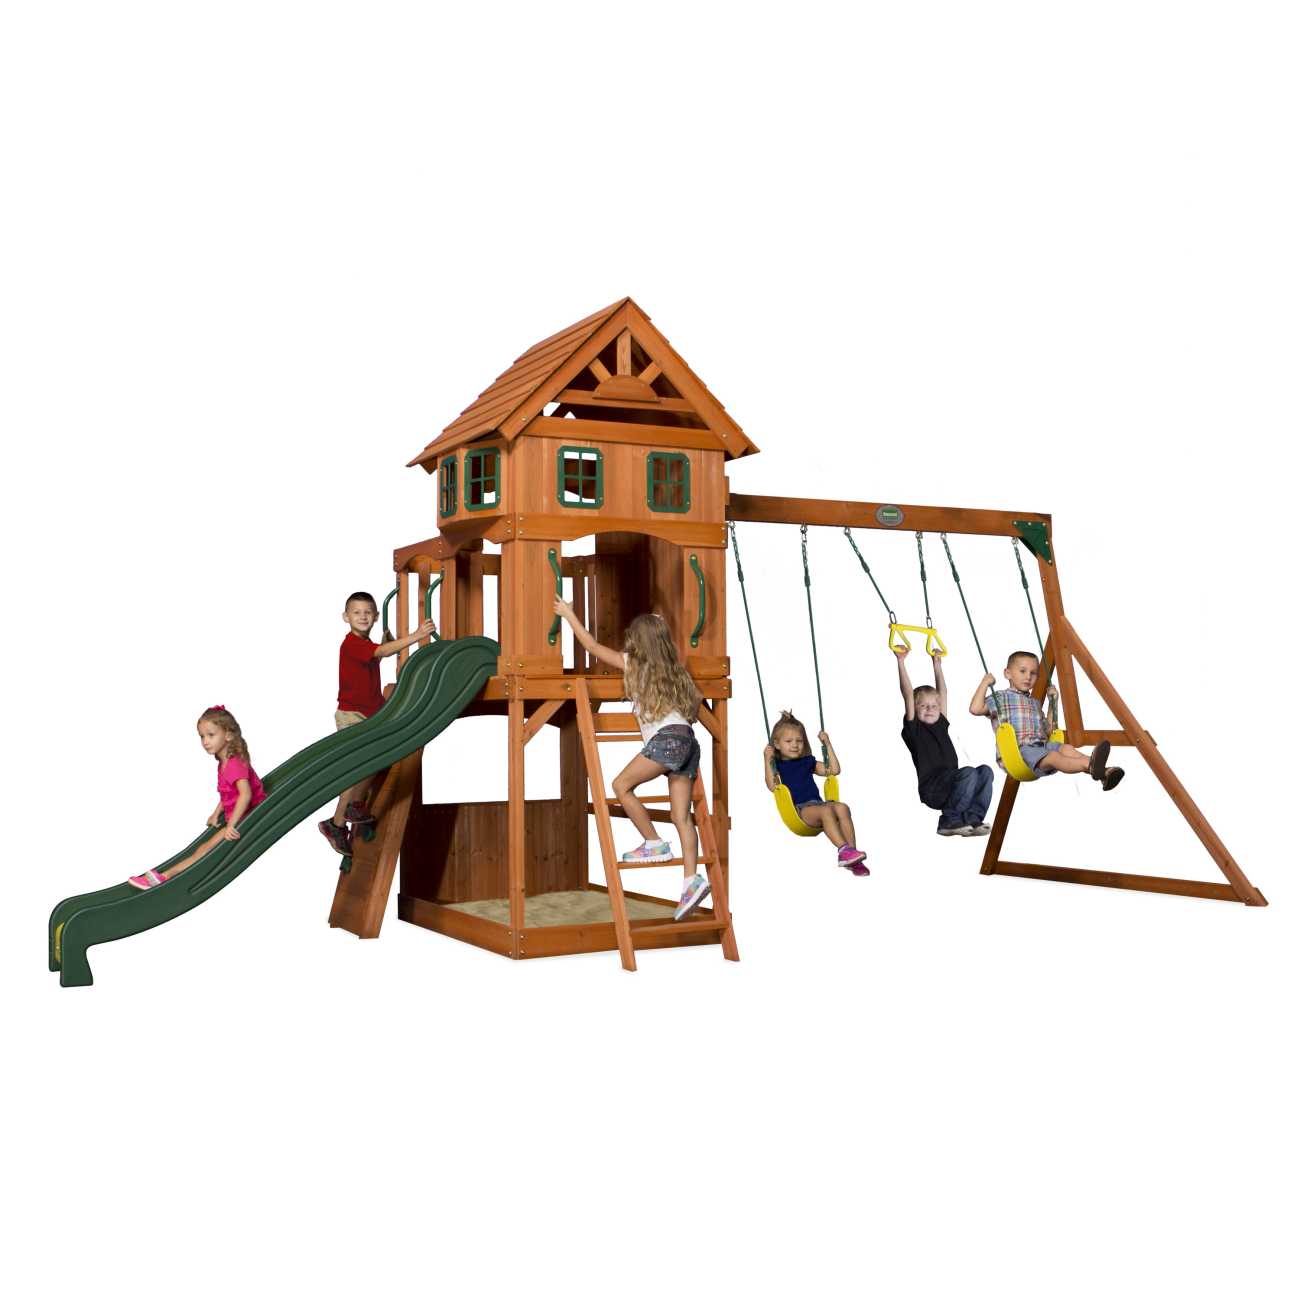 Spielturm Atlantic von Backyard, mit Rtusche und Schaukel für Kinder